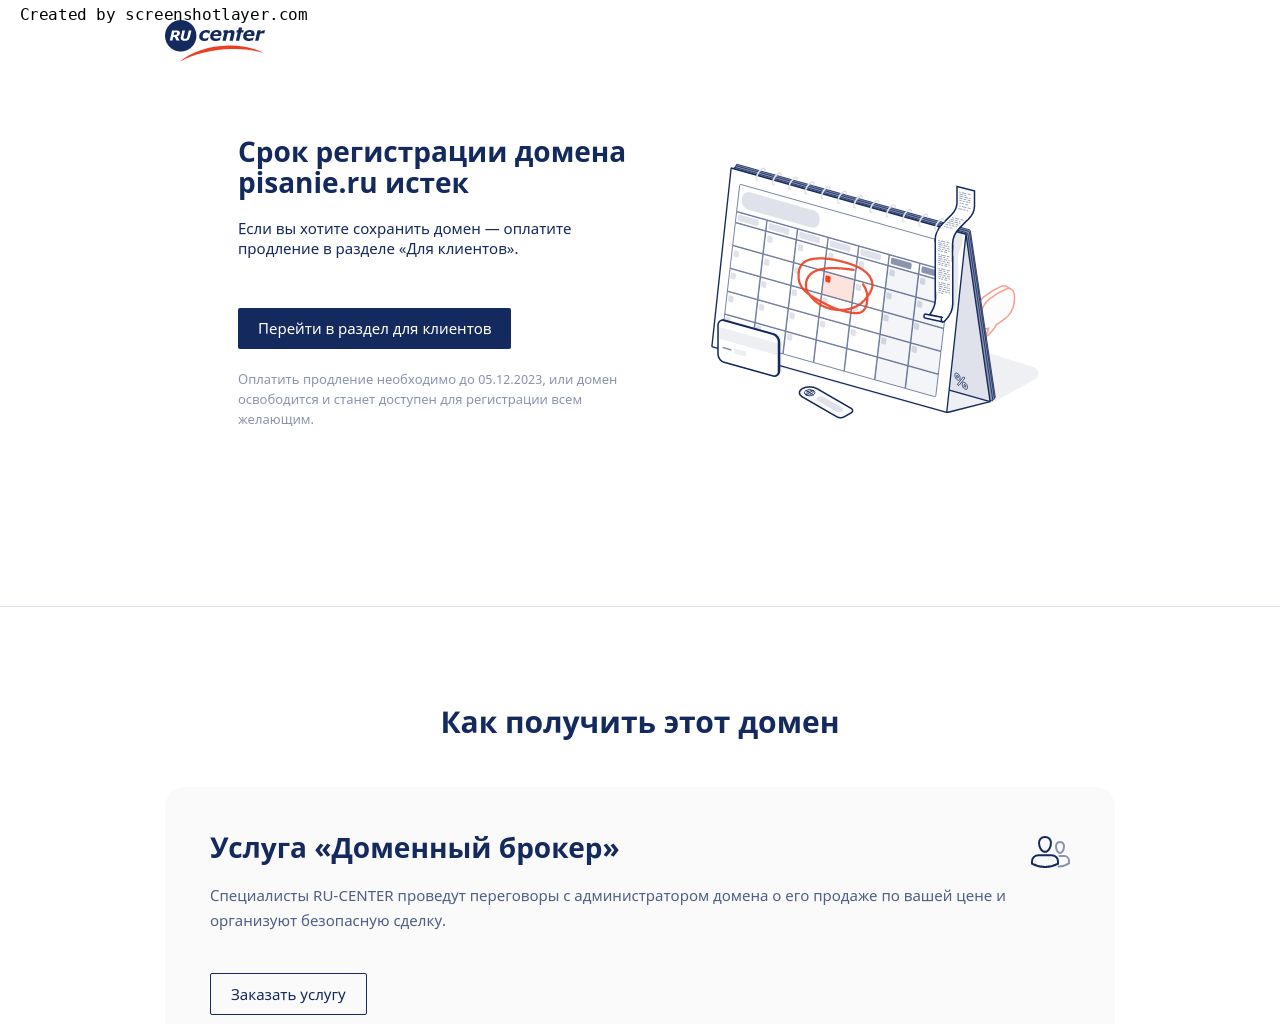 Изображение сайта pisanie.ru в разрешении 1280x1024